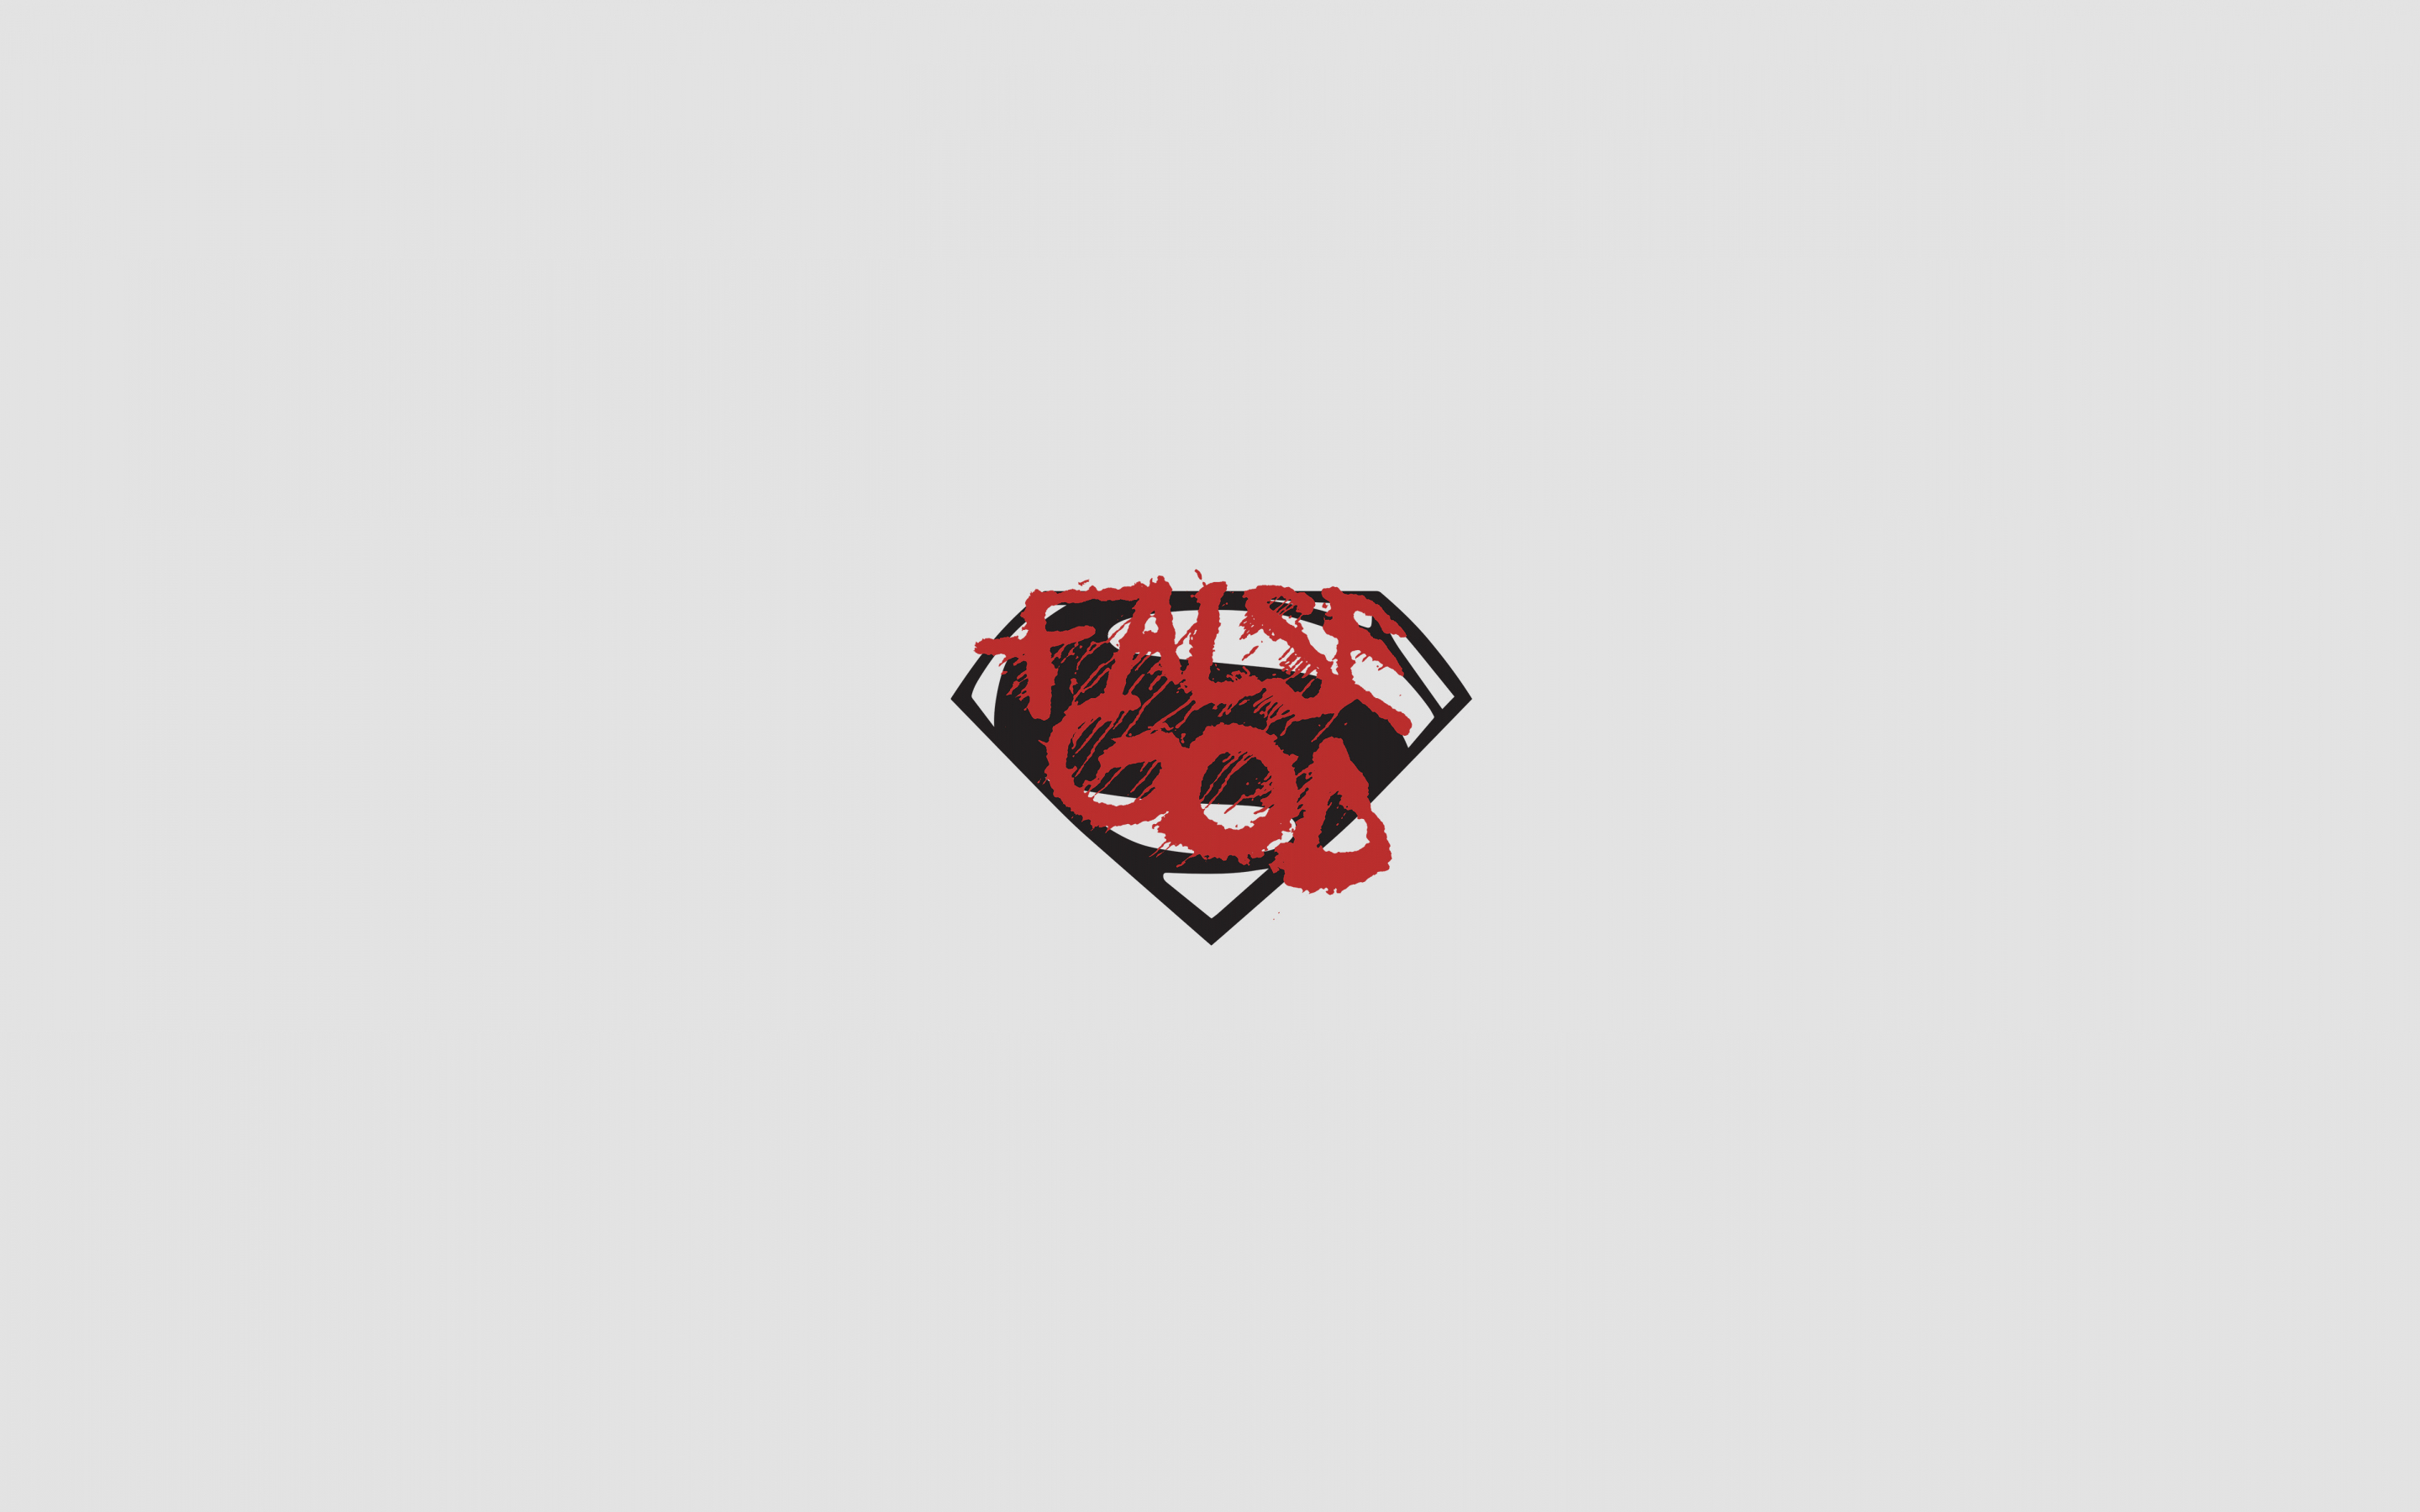 False god, batman vs superman, minimal, logo, 2880x1800 wallpaper